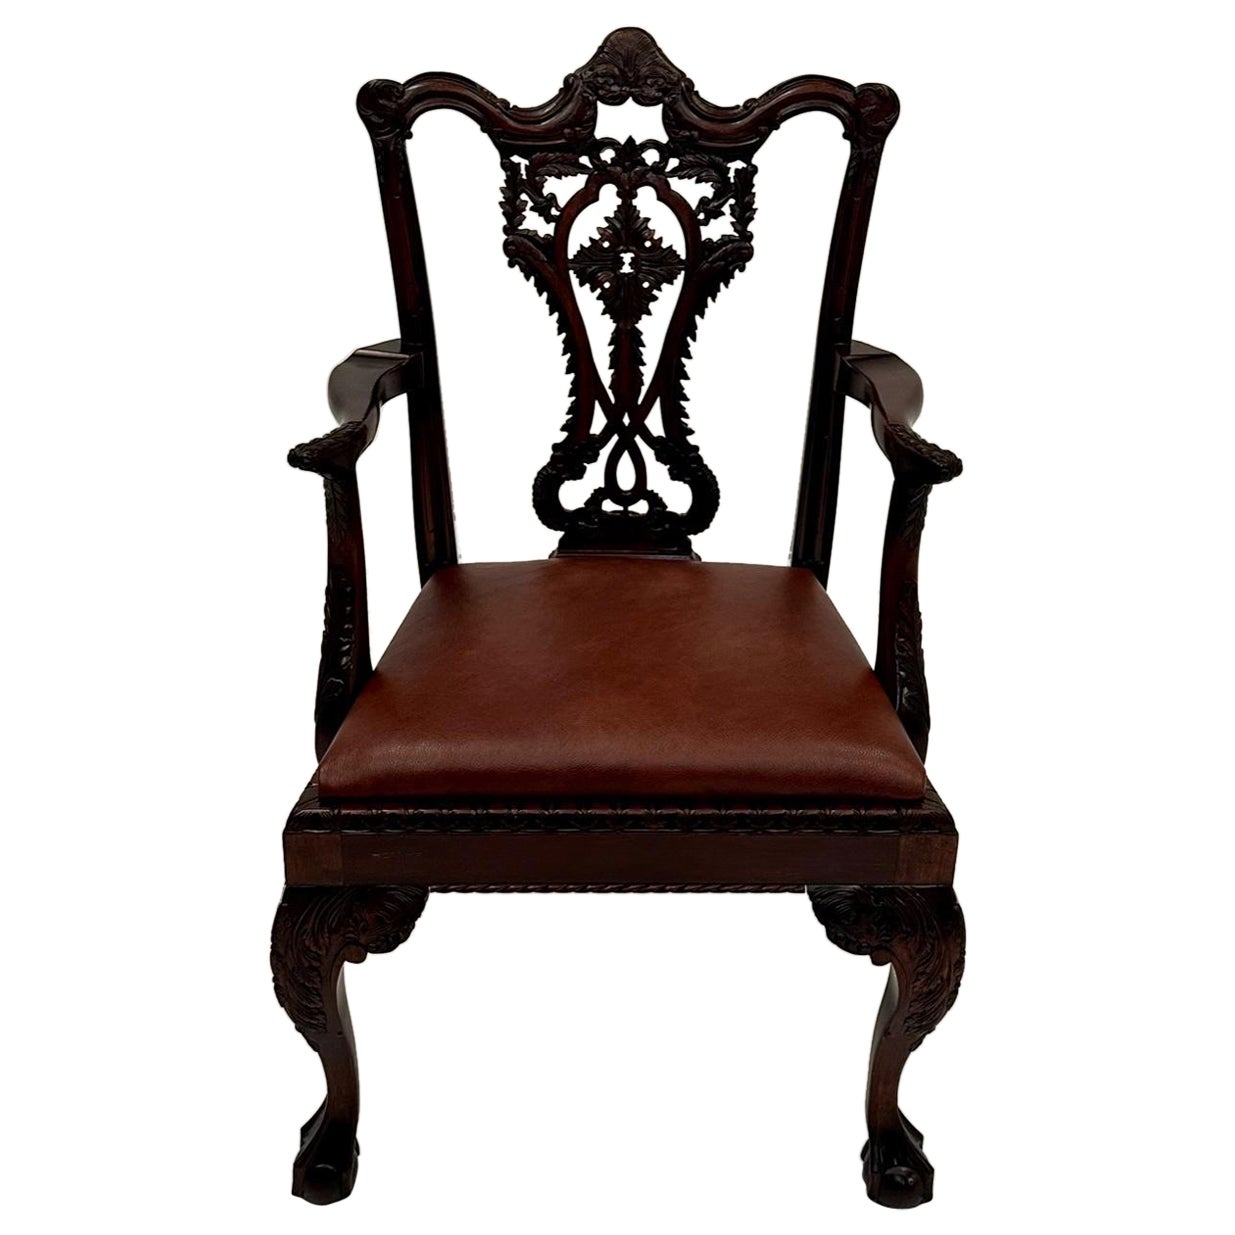 Magnifique fauteuil anglais de style Chippendale en acajou sculpté à la main